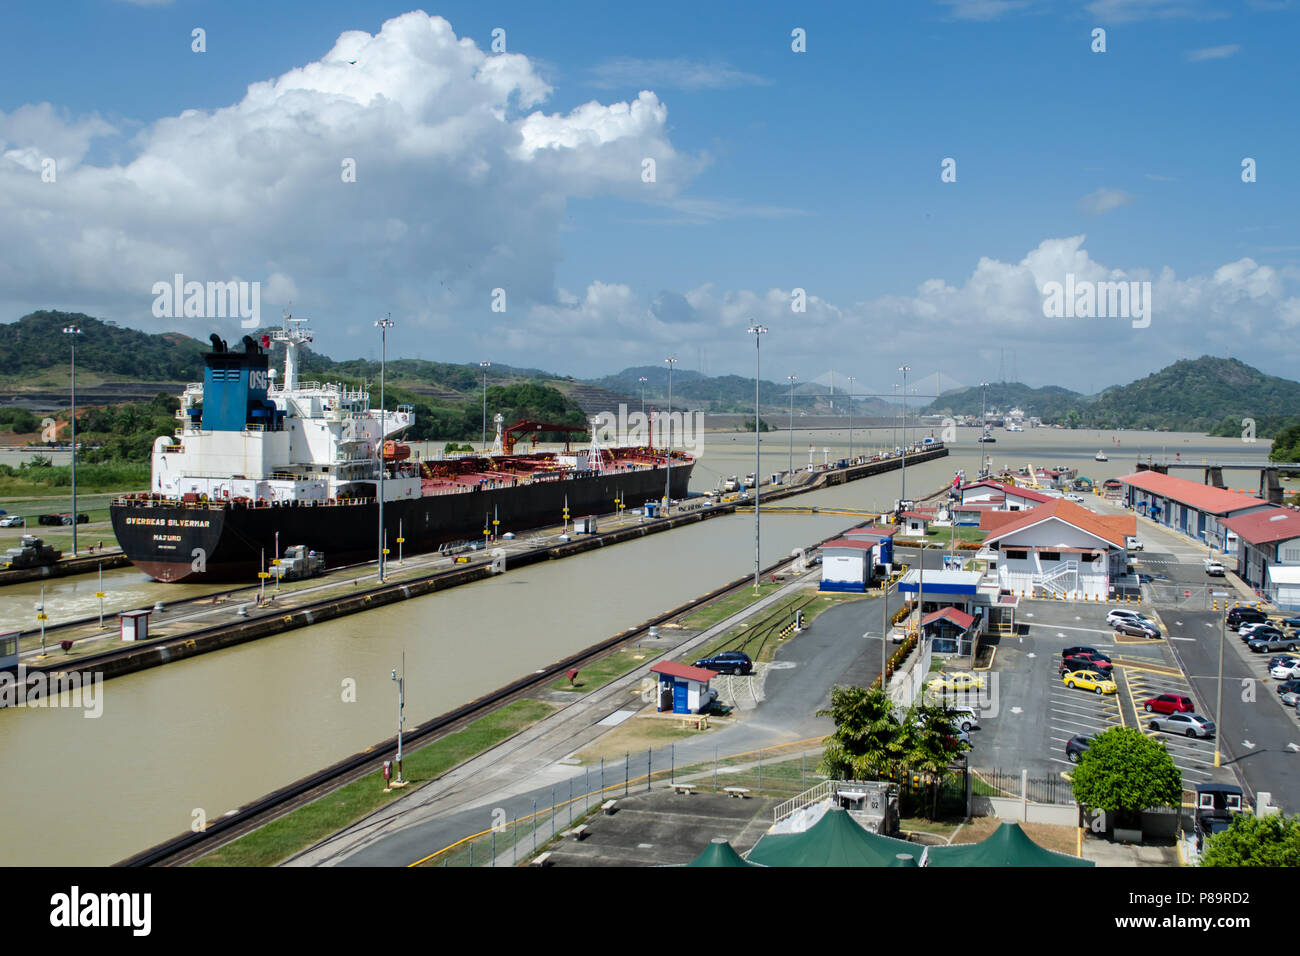 Ein Blick auf ein Schiff während der Durchfahrt durch den Panamakanal Miraflores Schleusen Stockfoto